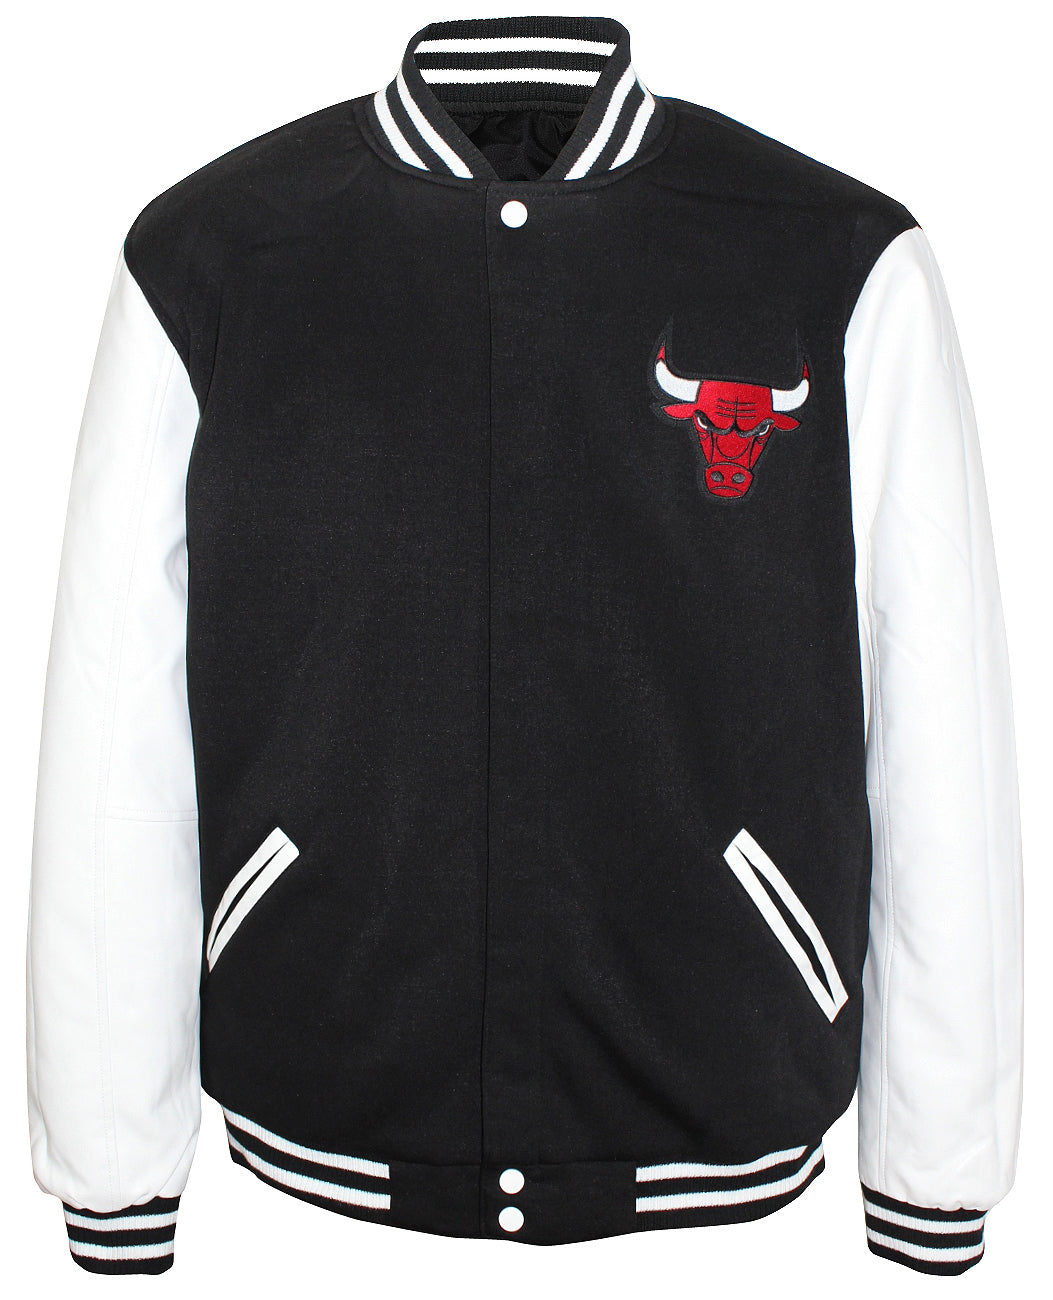 JH Design Men's Chicago Bulls Black Varsity Jacket